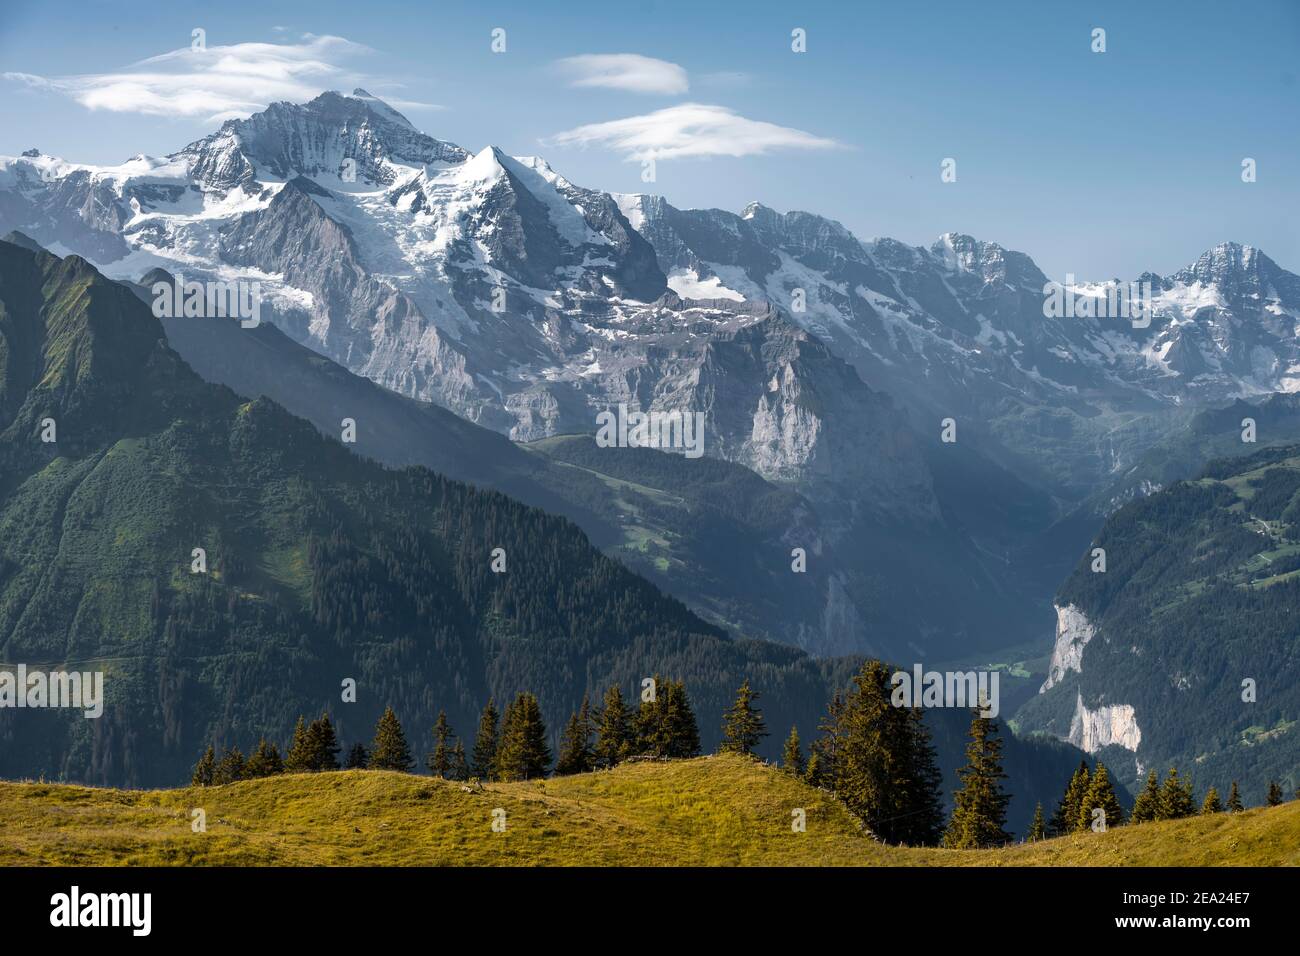 Sommets enneigés derrière la vallée de Lauterbrunnen, Jungfraujoch et Jungfrau, glacier Jungfraufirn, région de Jungfrau, Grindelwald, canton de Berne Banque D'Images